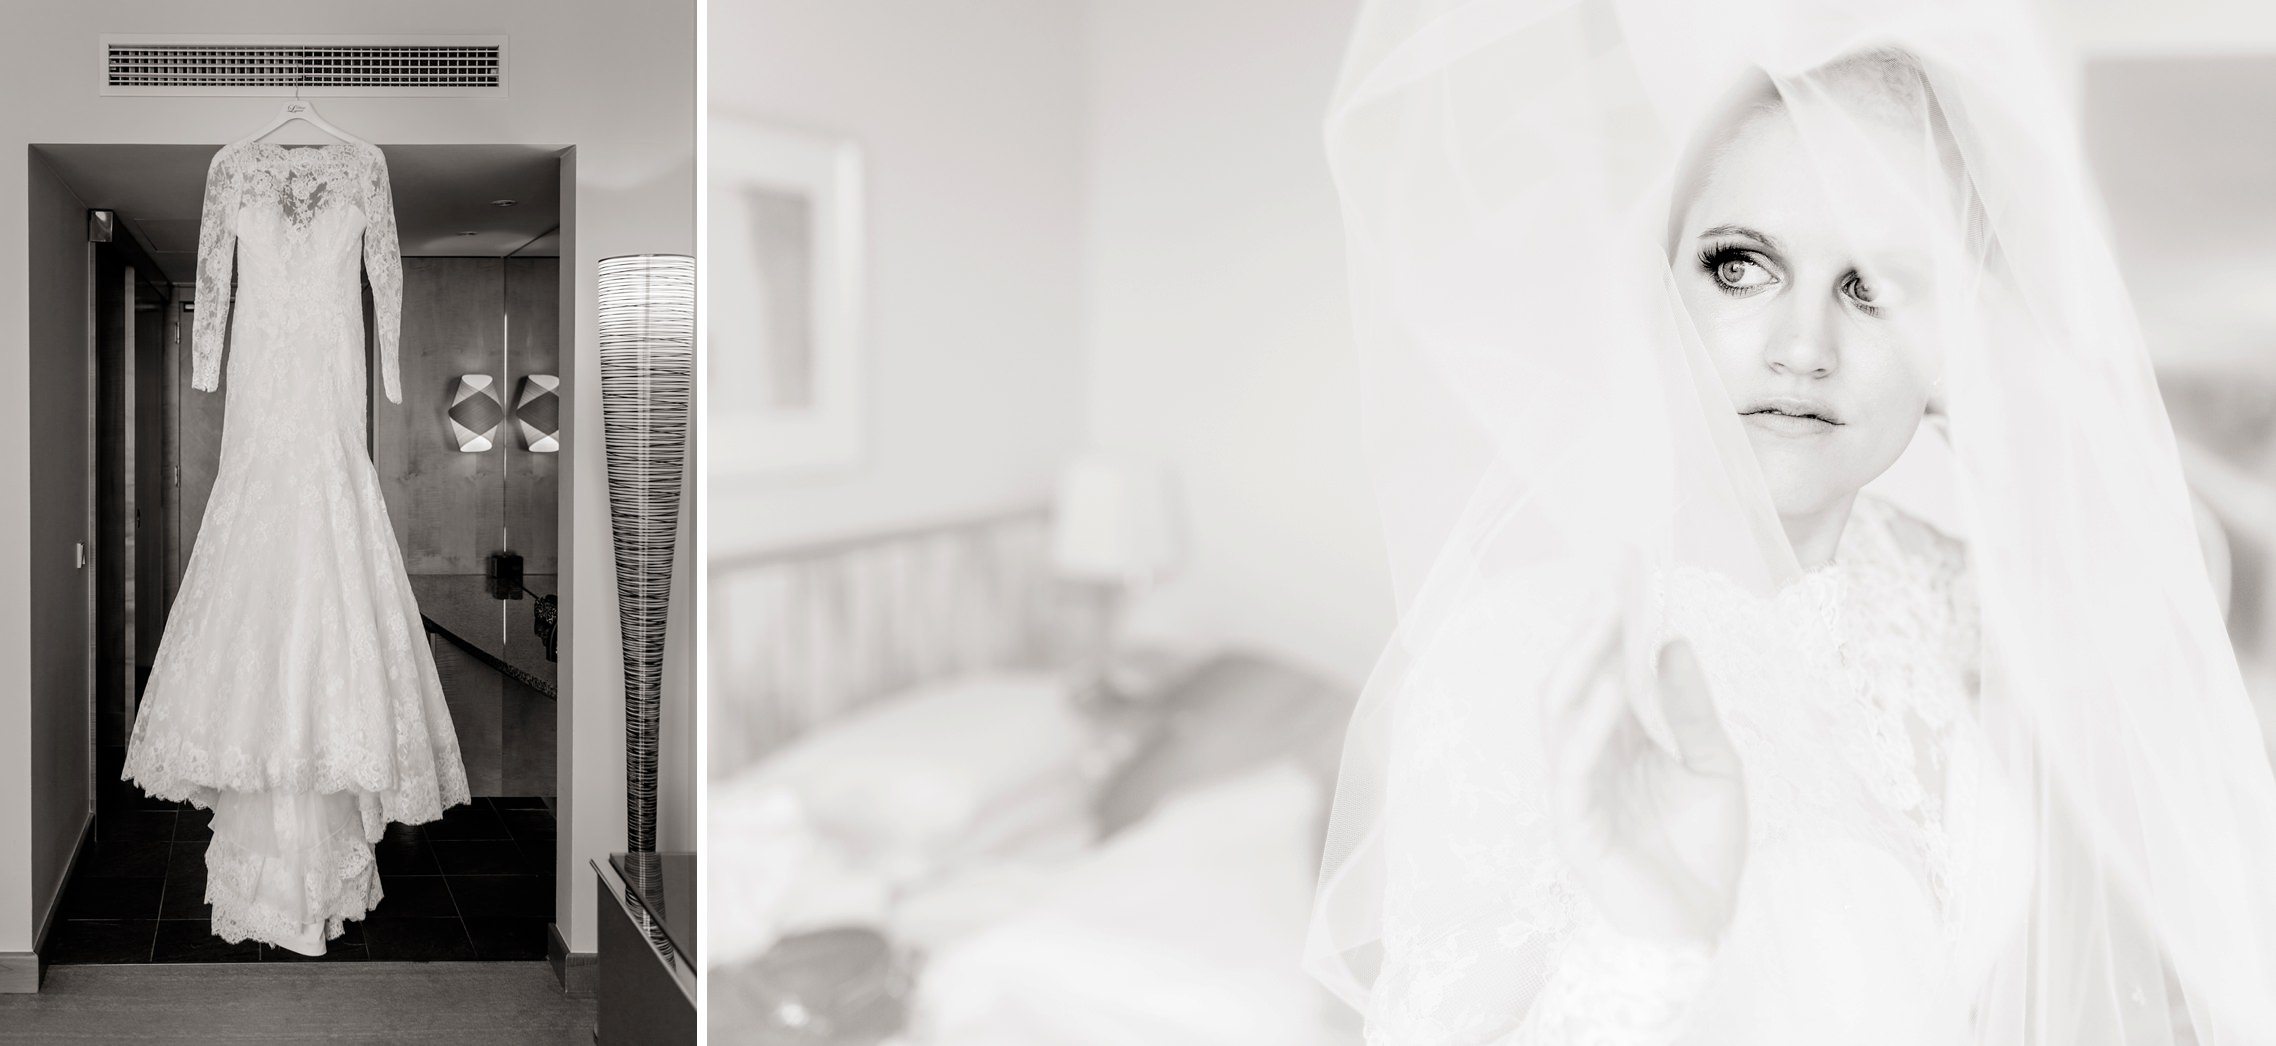 Bildpaar: Schwarz-weiss Portrait der Braut unter ihrem Schleier und das Hochzeitskleid.